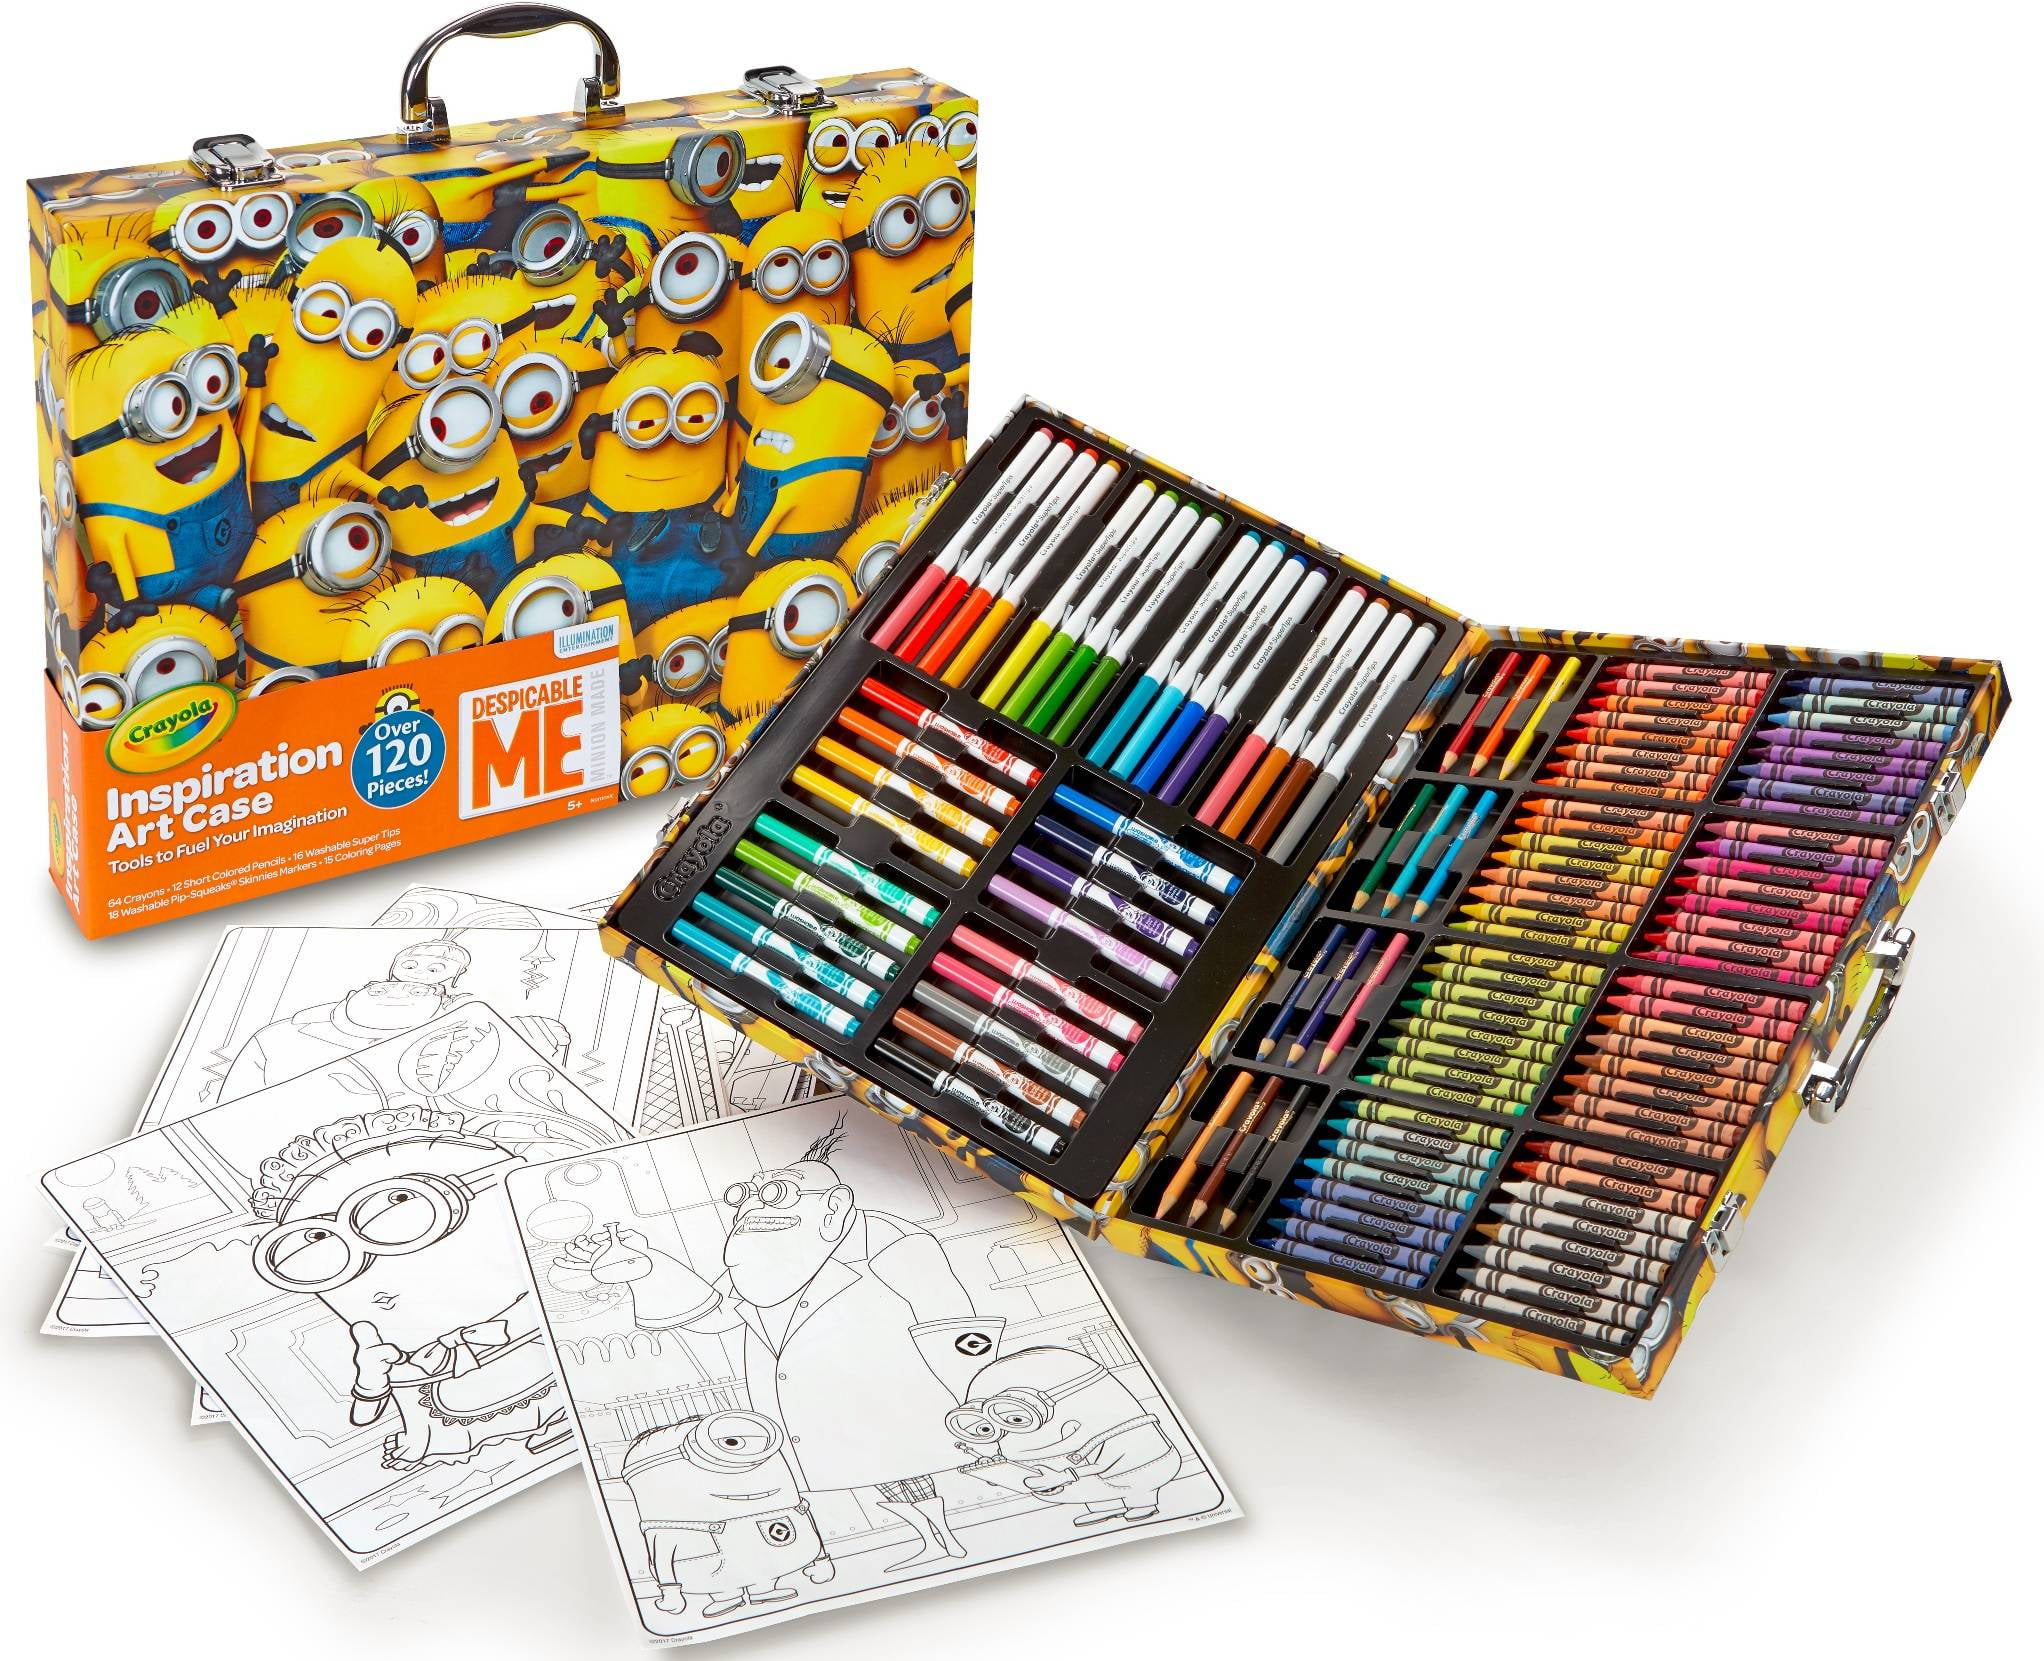 Crayola Despicable Me 120 Piece Inspiration Art Case